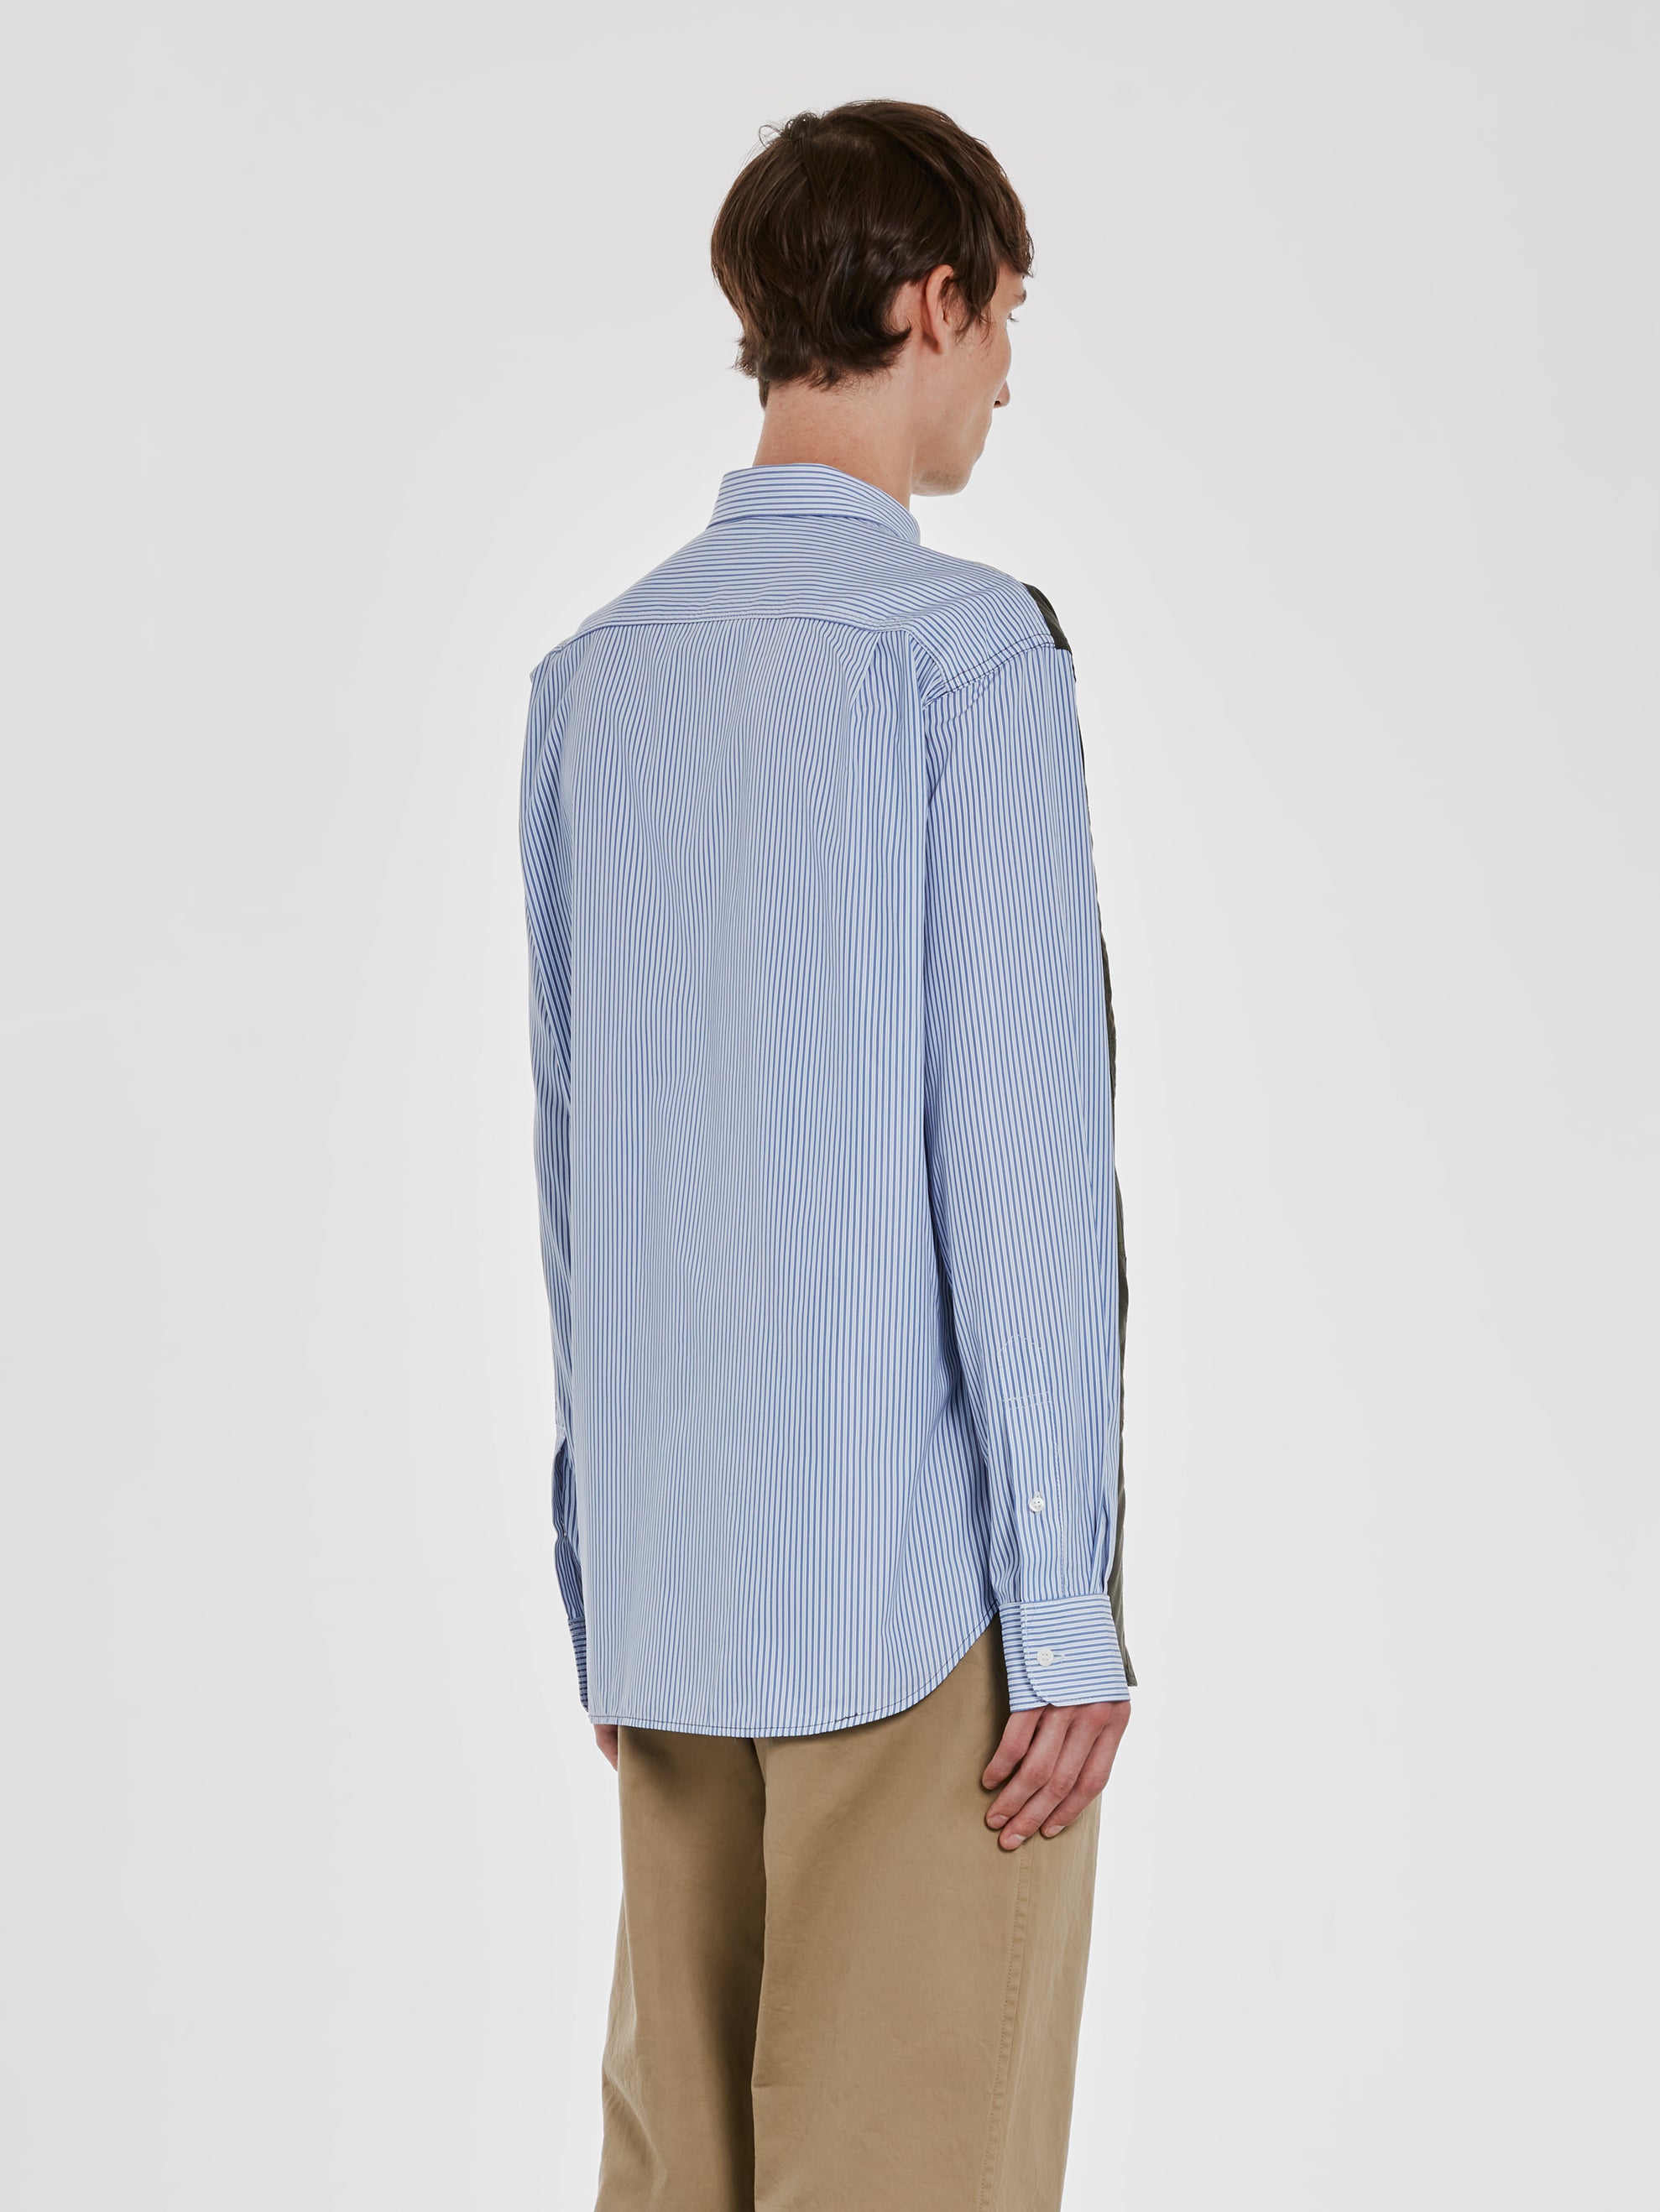 Comme des Garçons Homme - Men's Multi Fabric Shirt - (Khaki/Blue)